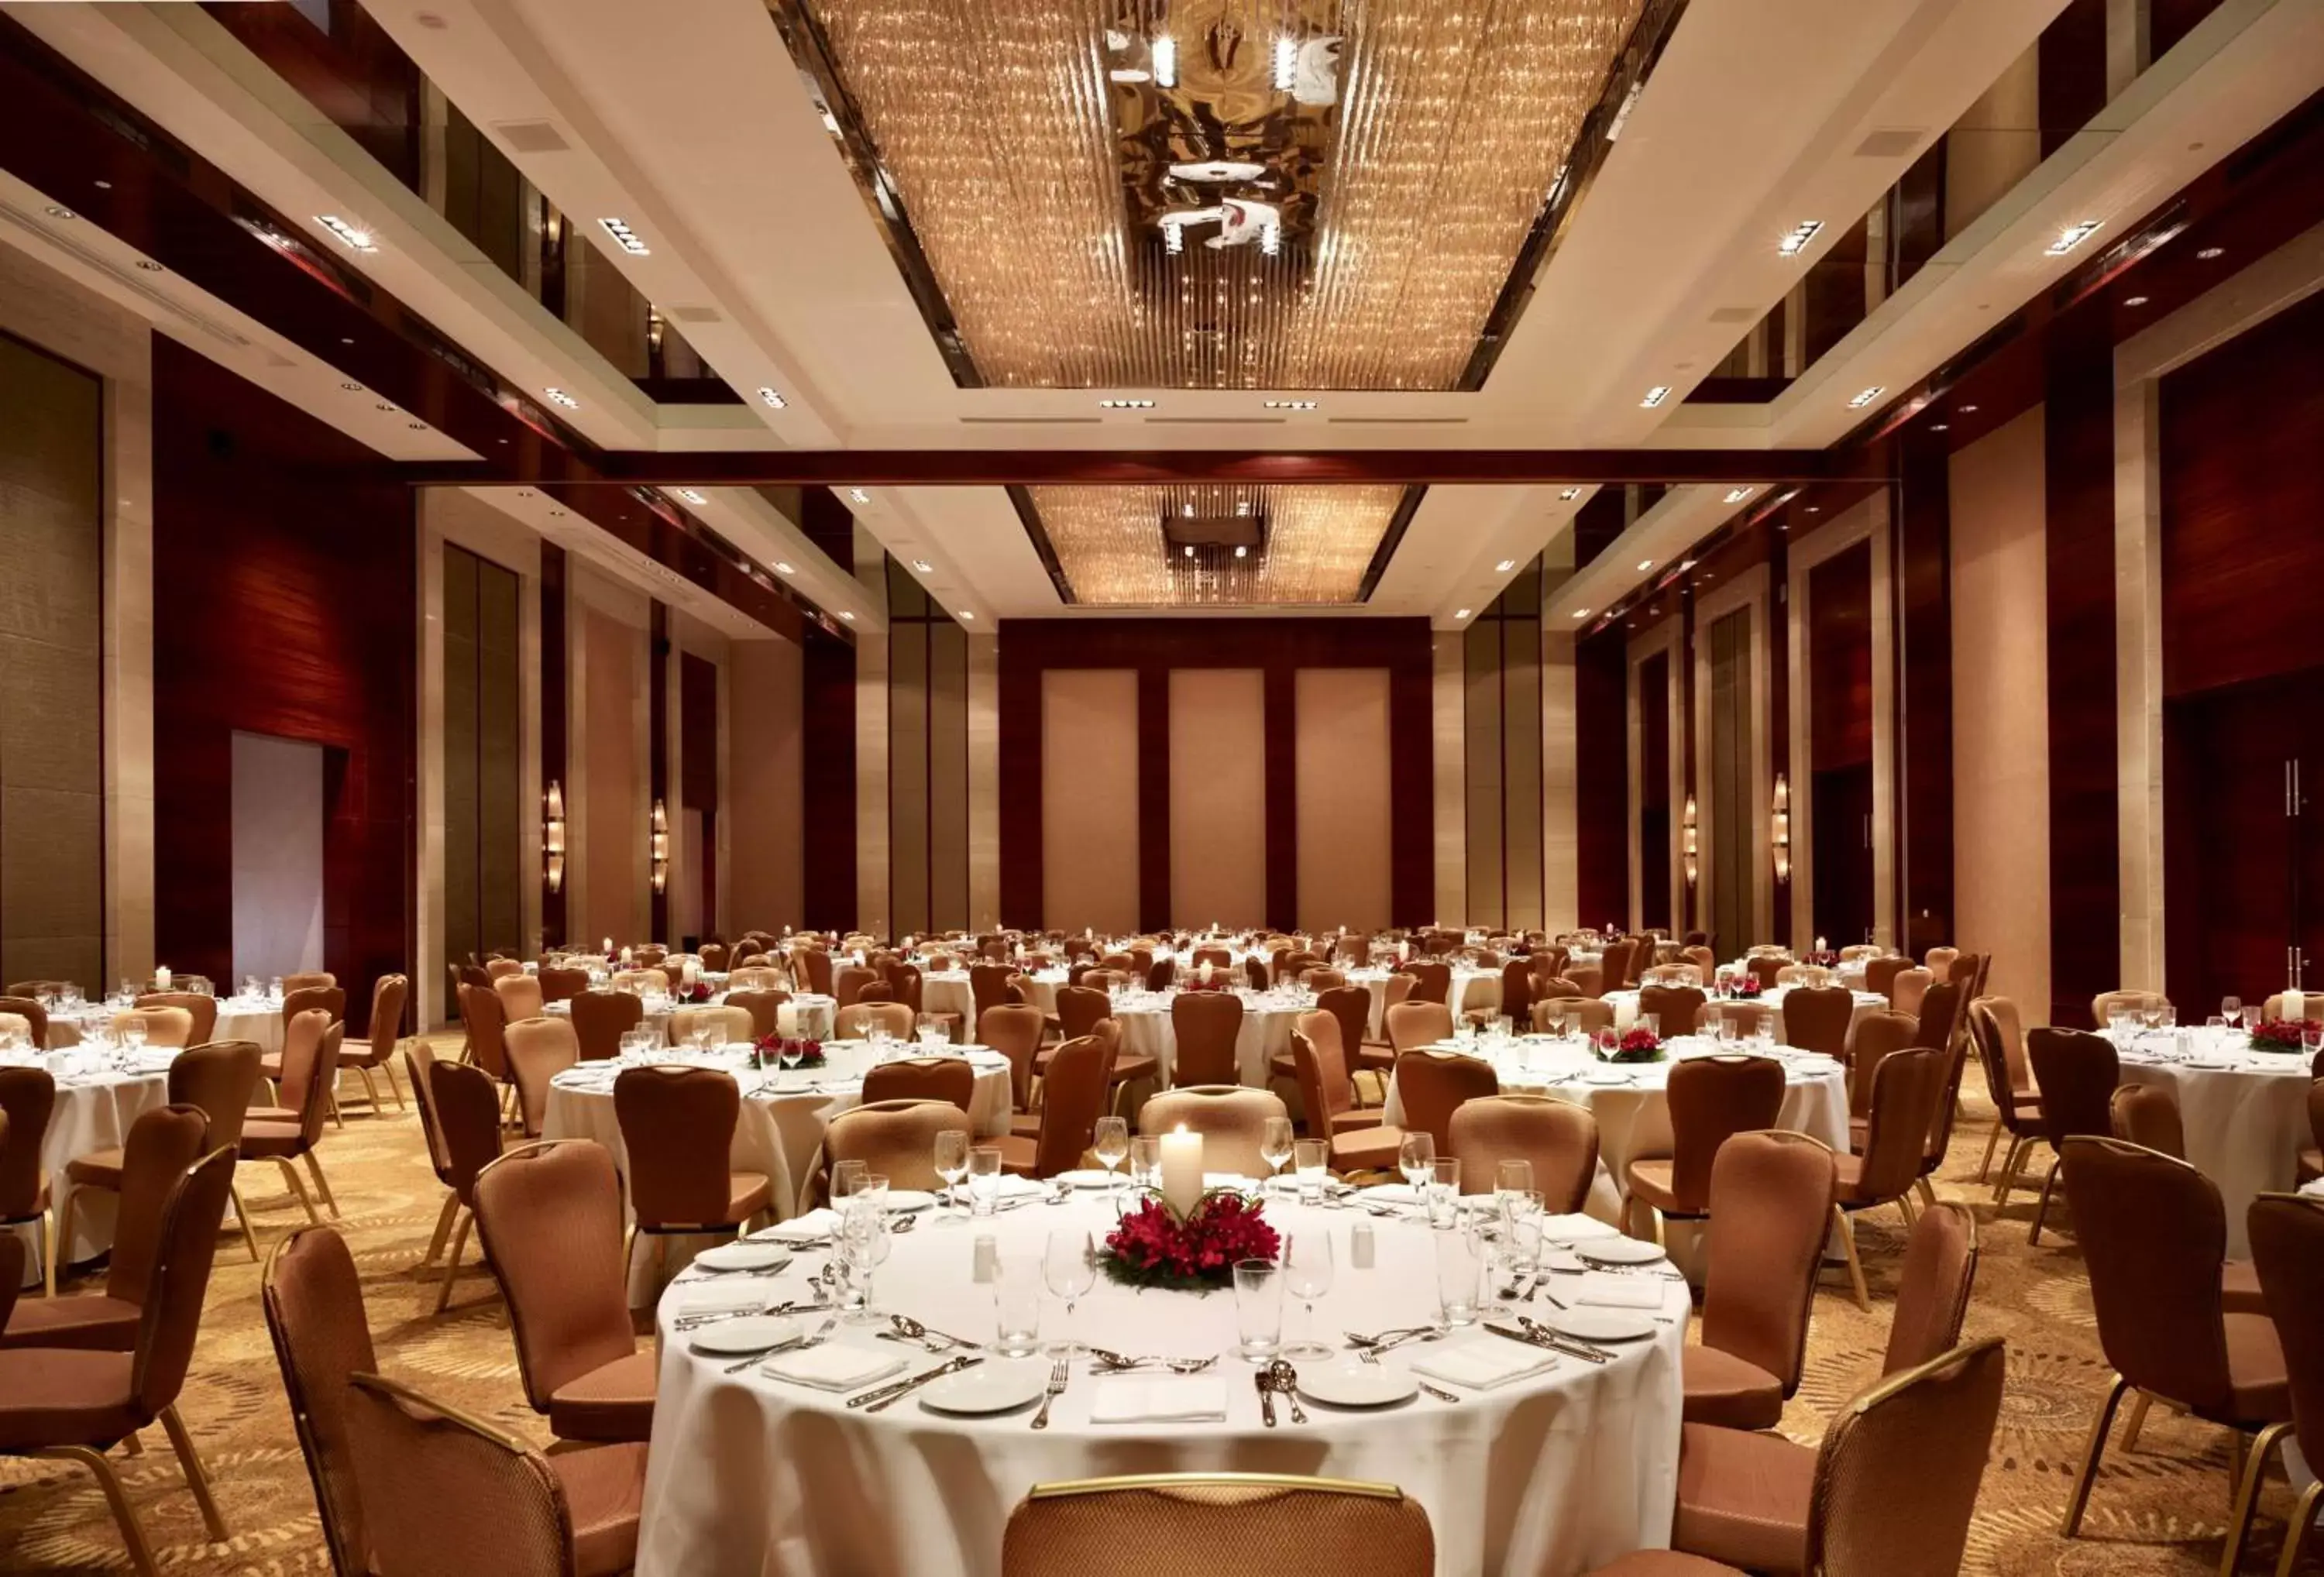 Lobby or reception, Banquet Facilities in Hyatt Regency Pune Hotel & Residences